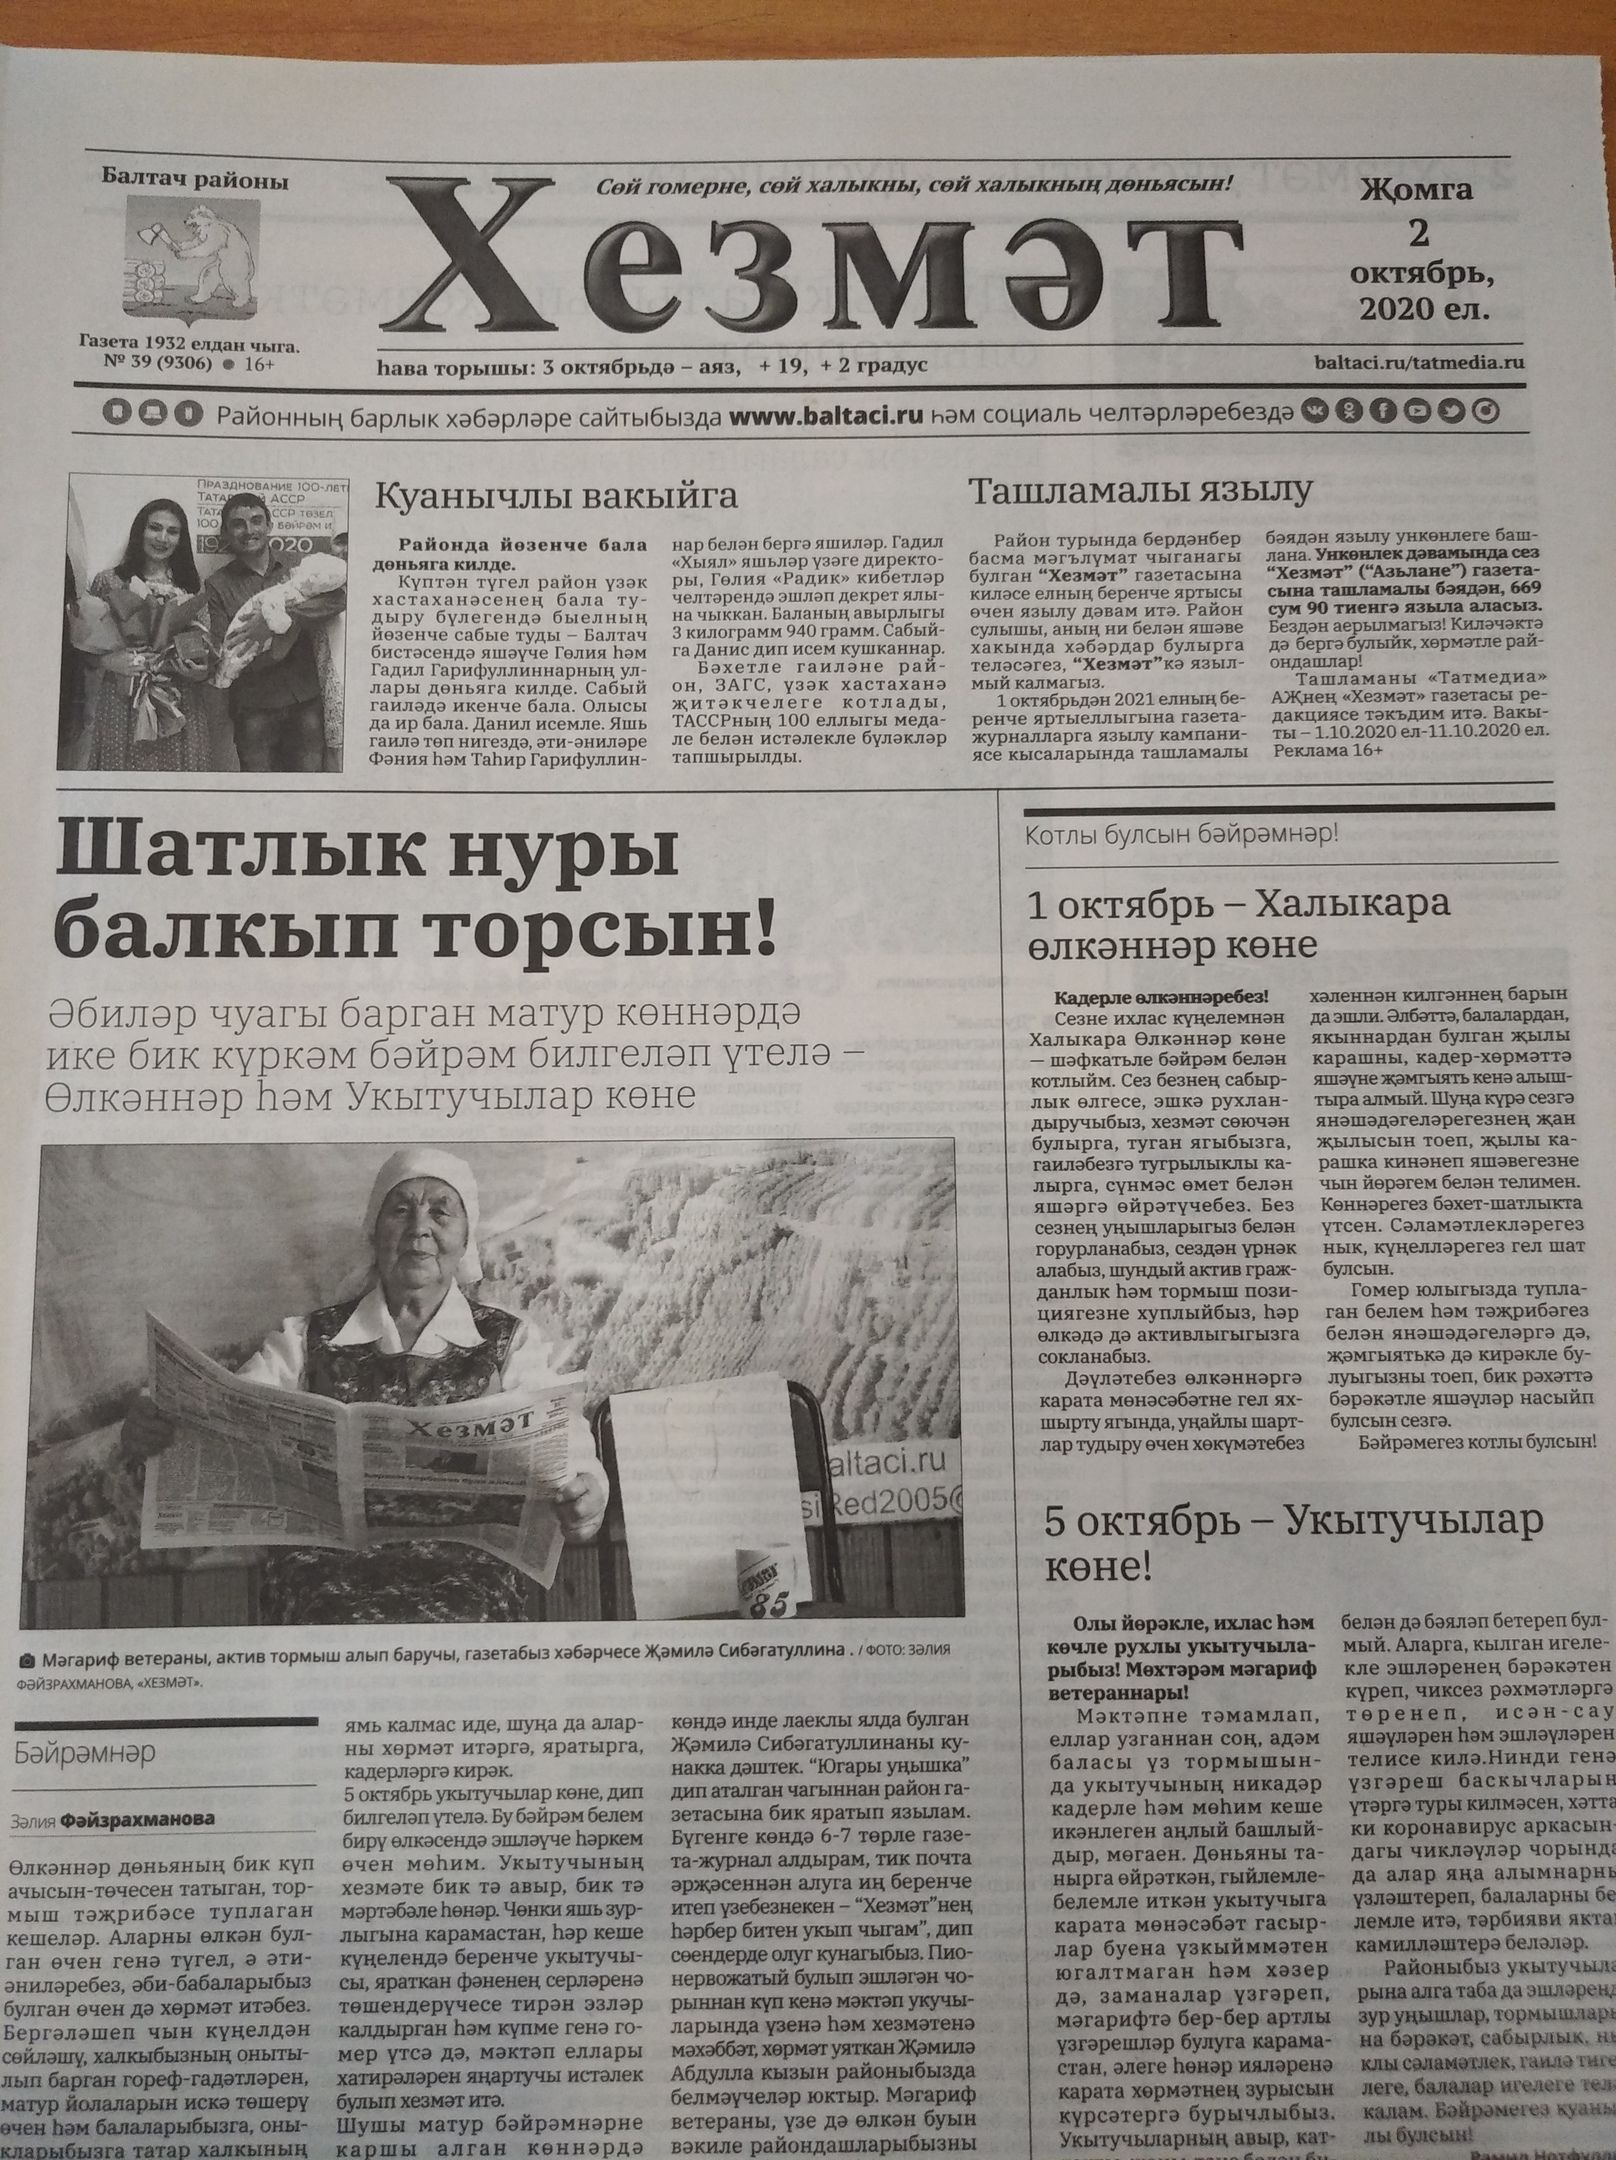 Газетаның 39нчы санында (2 октябрь, 2020 ел) чыгарылган белдерүләр һәм рекламалар